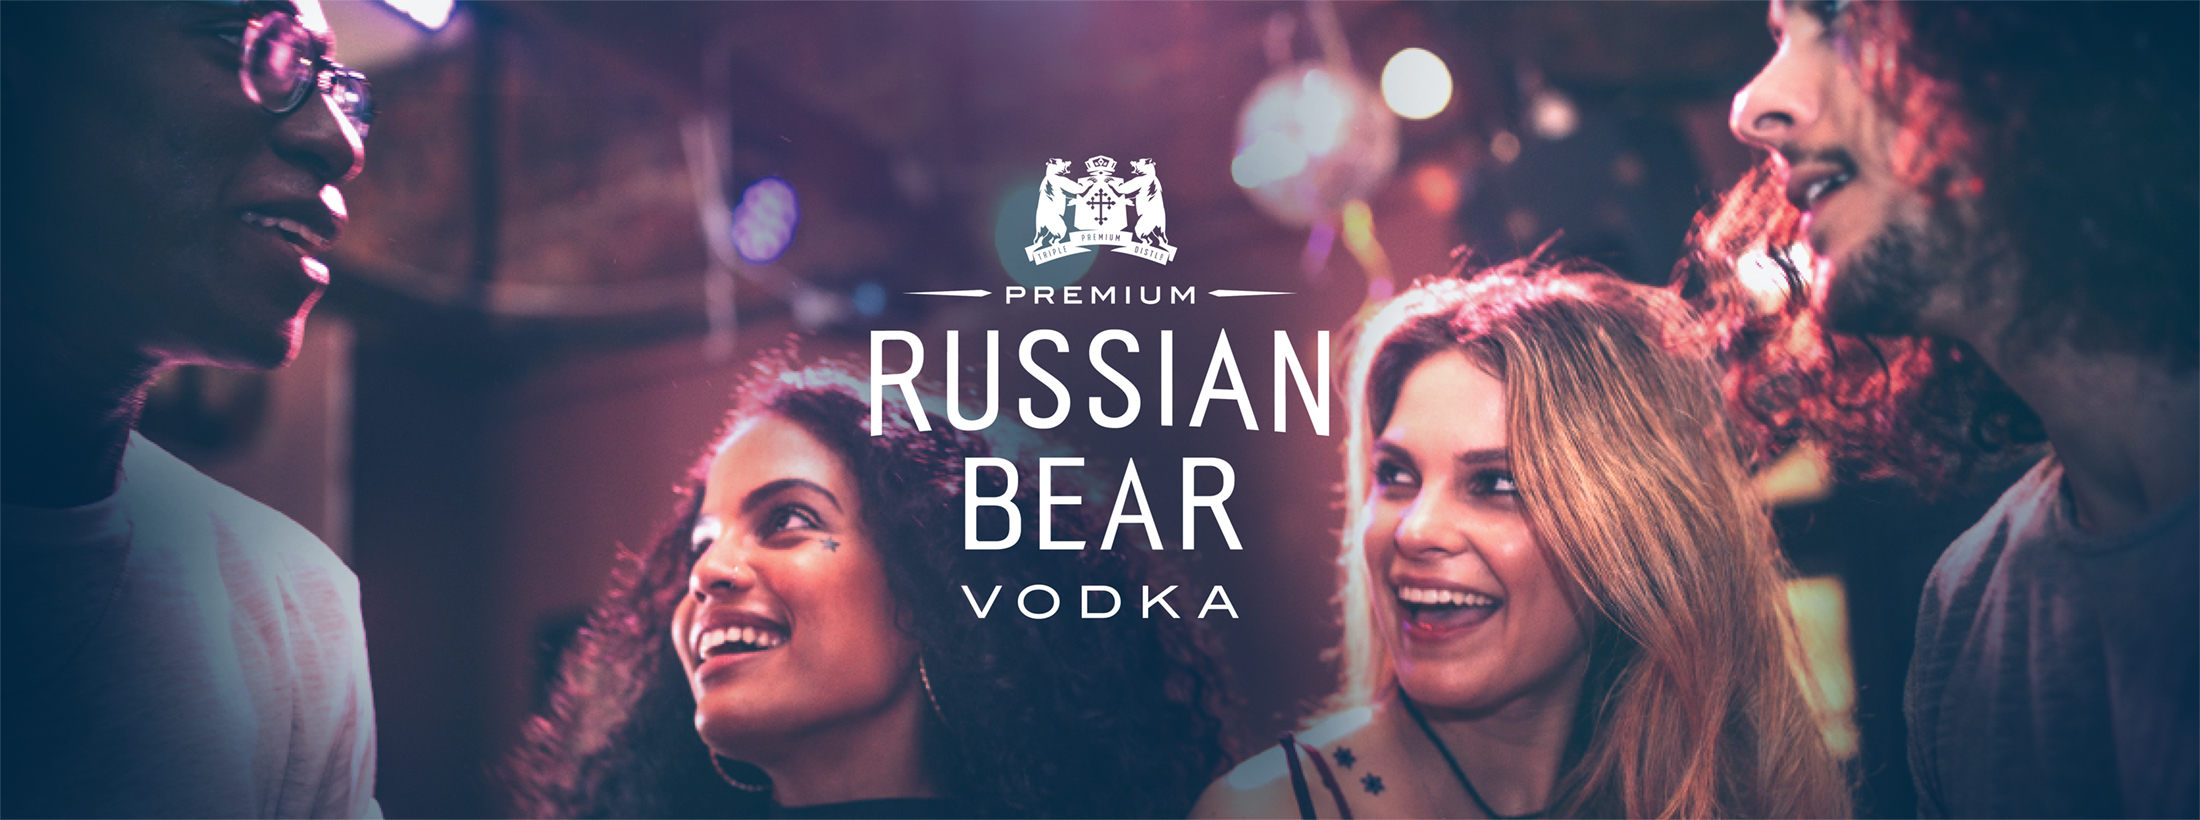 Edward Snell & Co. | Brands | Russian Bear